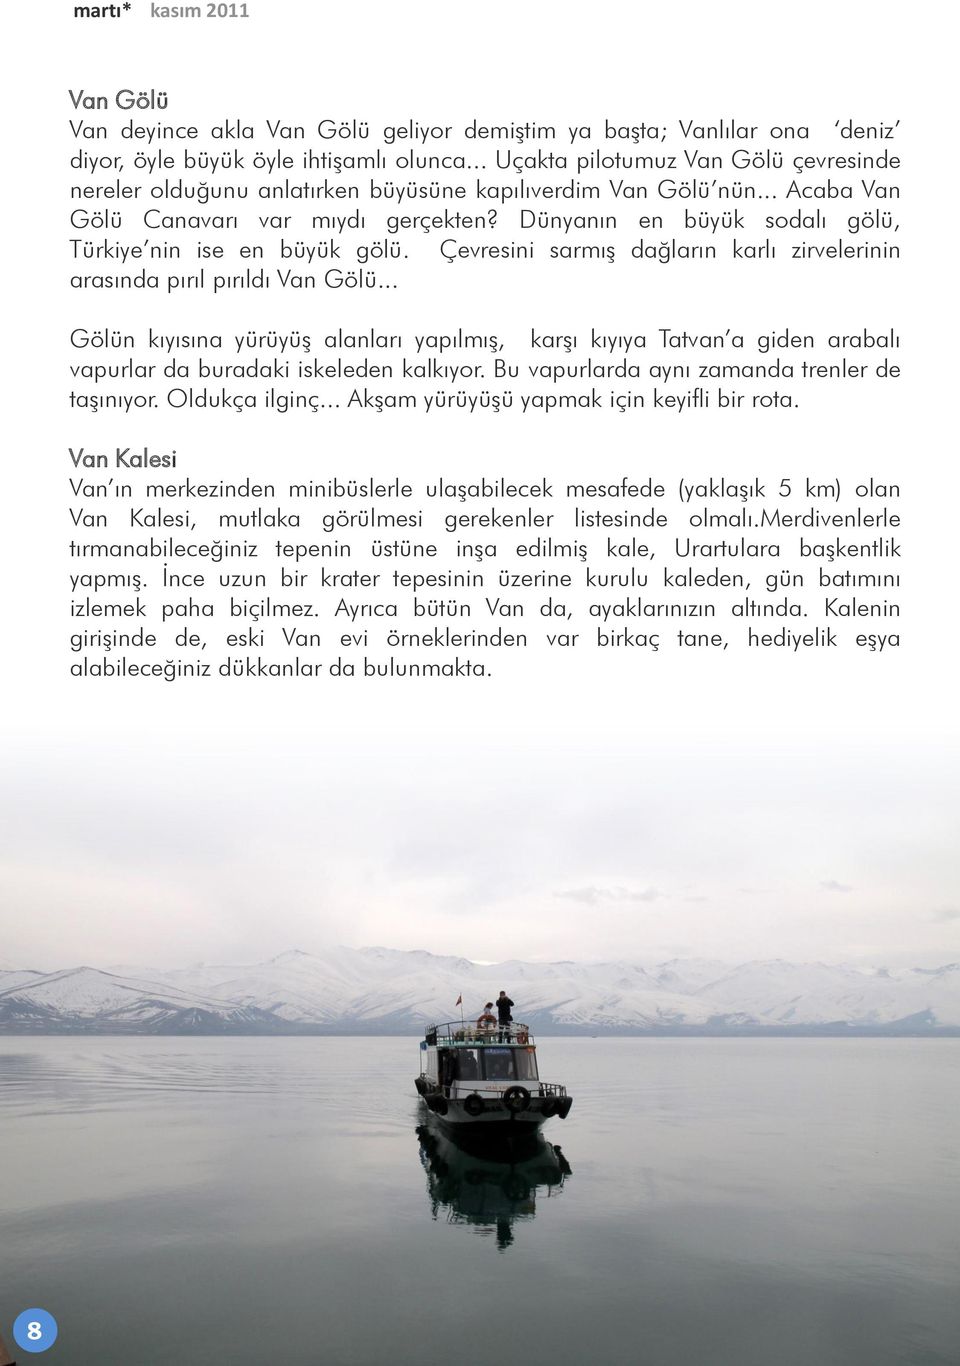 Dünyanın en büyük sodalı gölü, Türkiye nin ise en büyük gölü. Çevresini sarmıģ dağların karlı zirvelerinin arasında pırıl pırıldı Van Gölü.